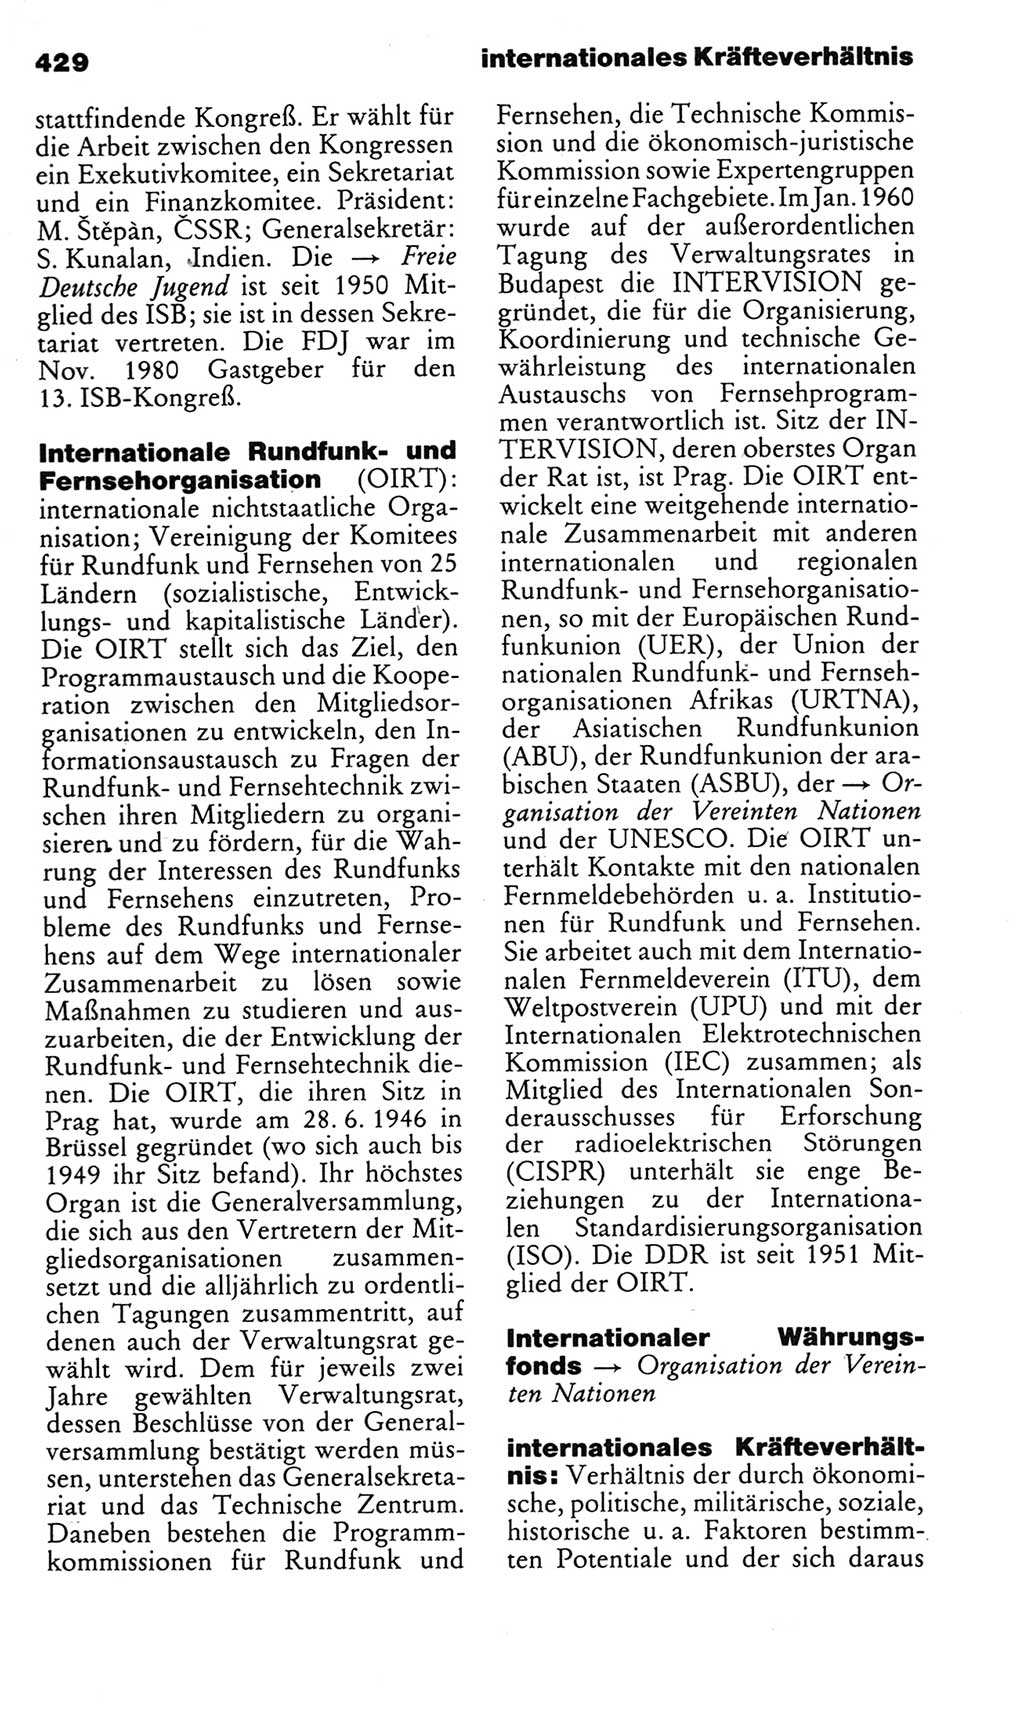 Kleines politisches Wörterbuch [Deutsche Demokratische Republik (DDR)] 1983, Seite 429 (Kl. pol. Wb. DDR 1983, S. 429)